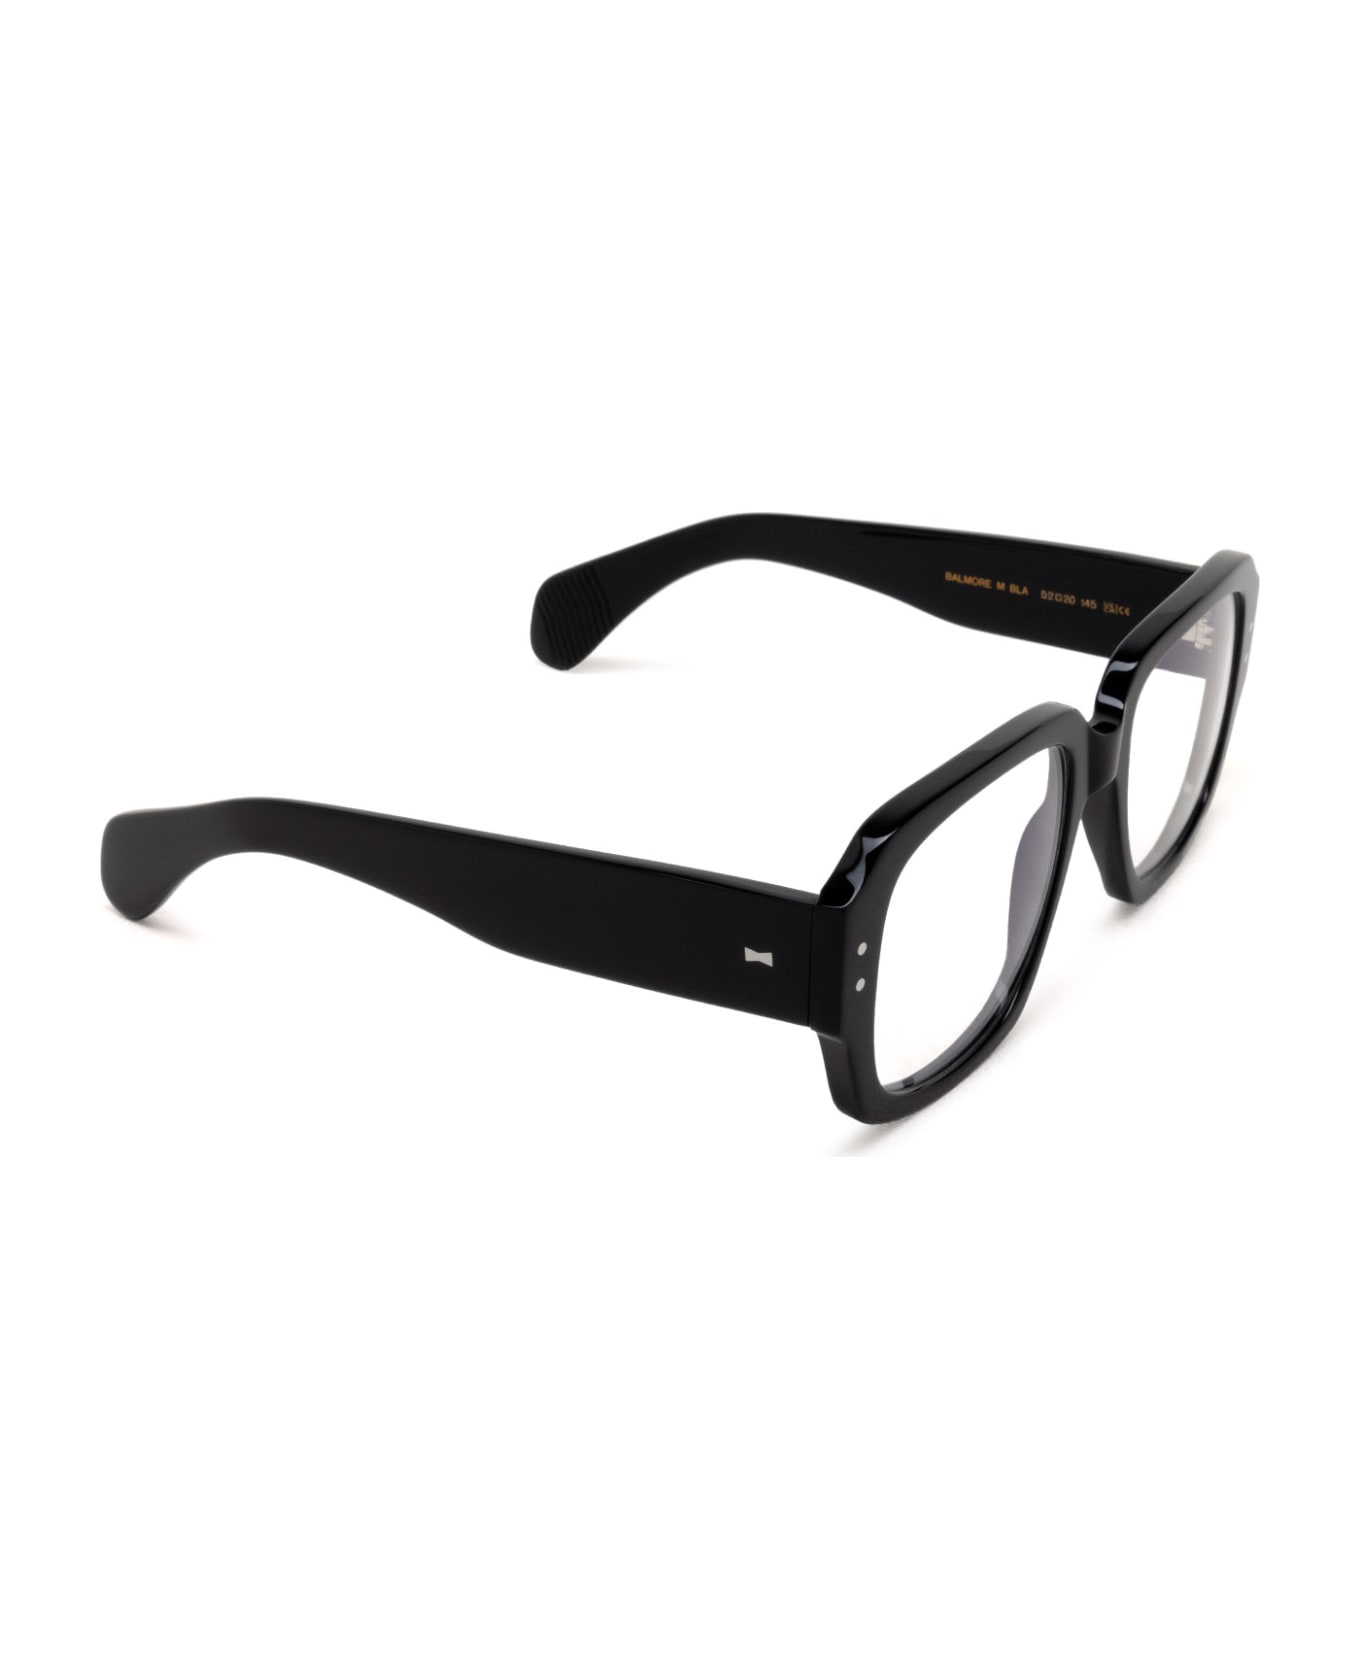 Cubitts Balmore Black Glasses - Black